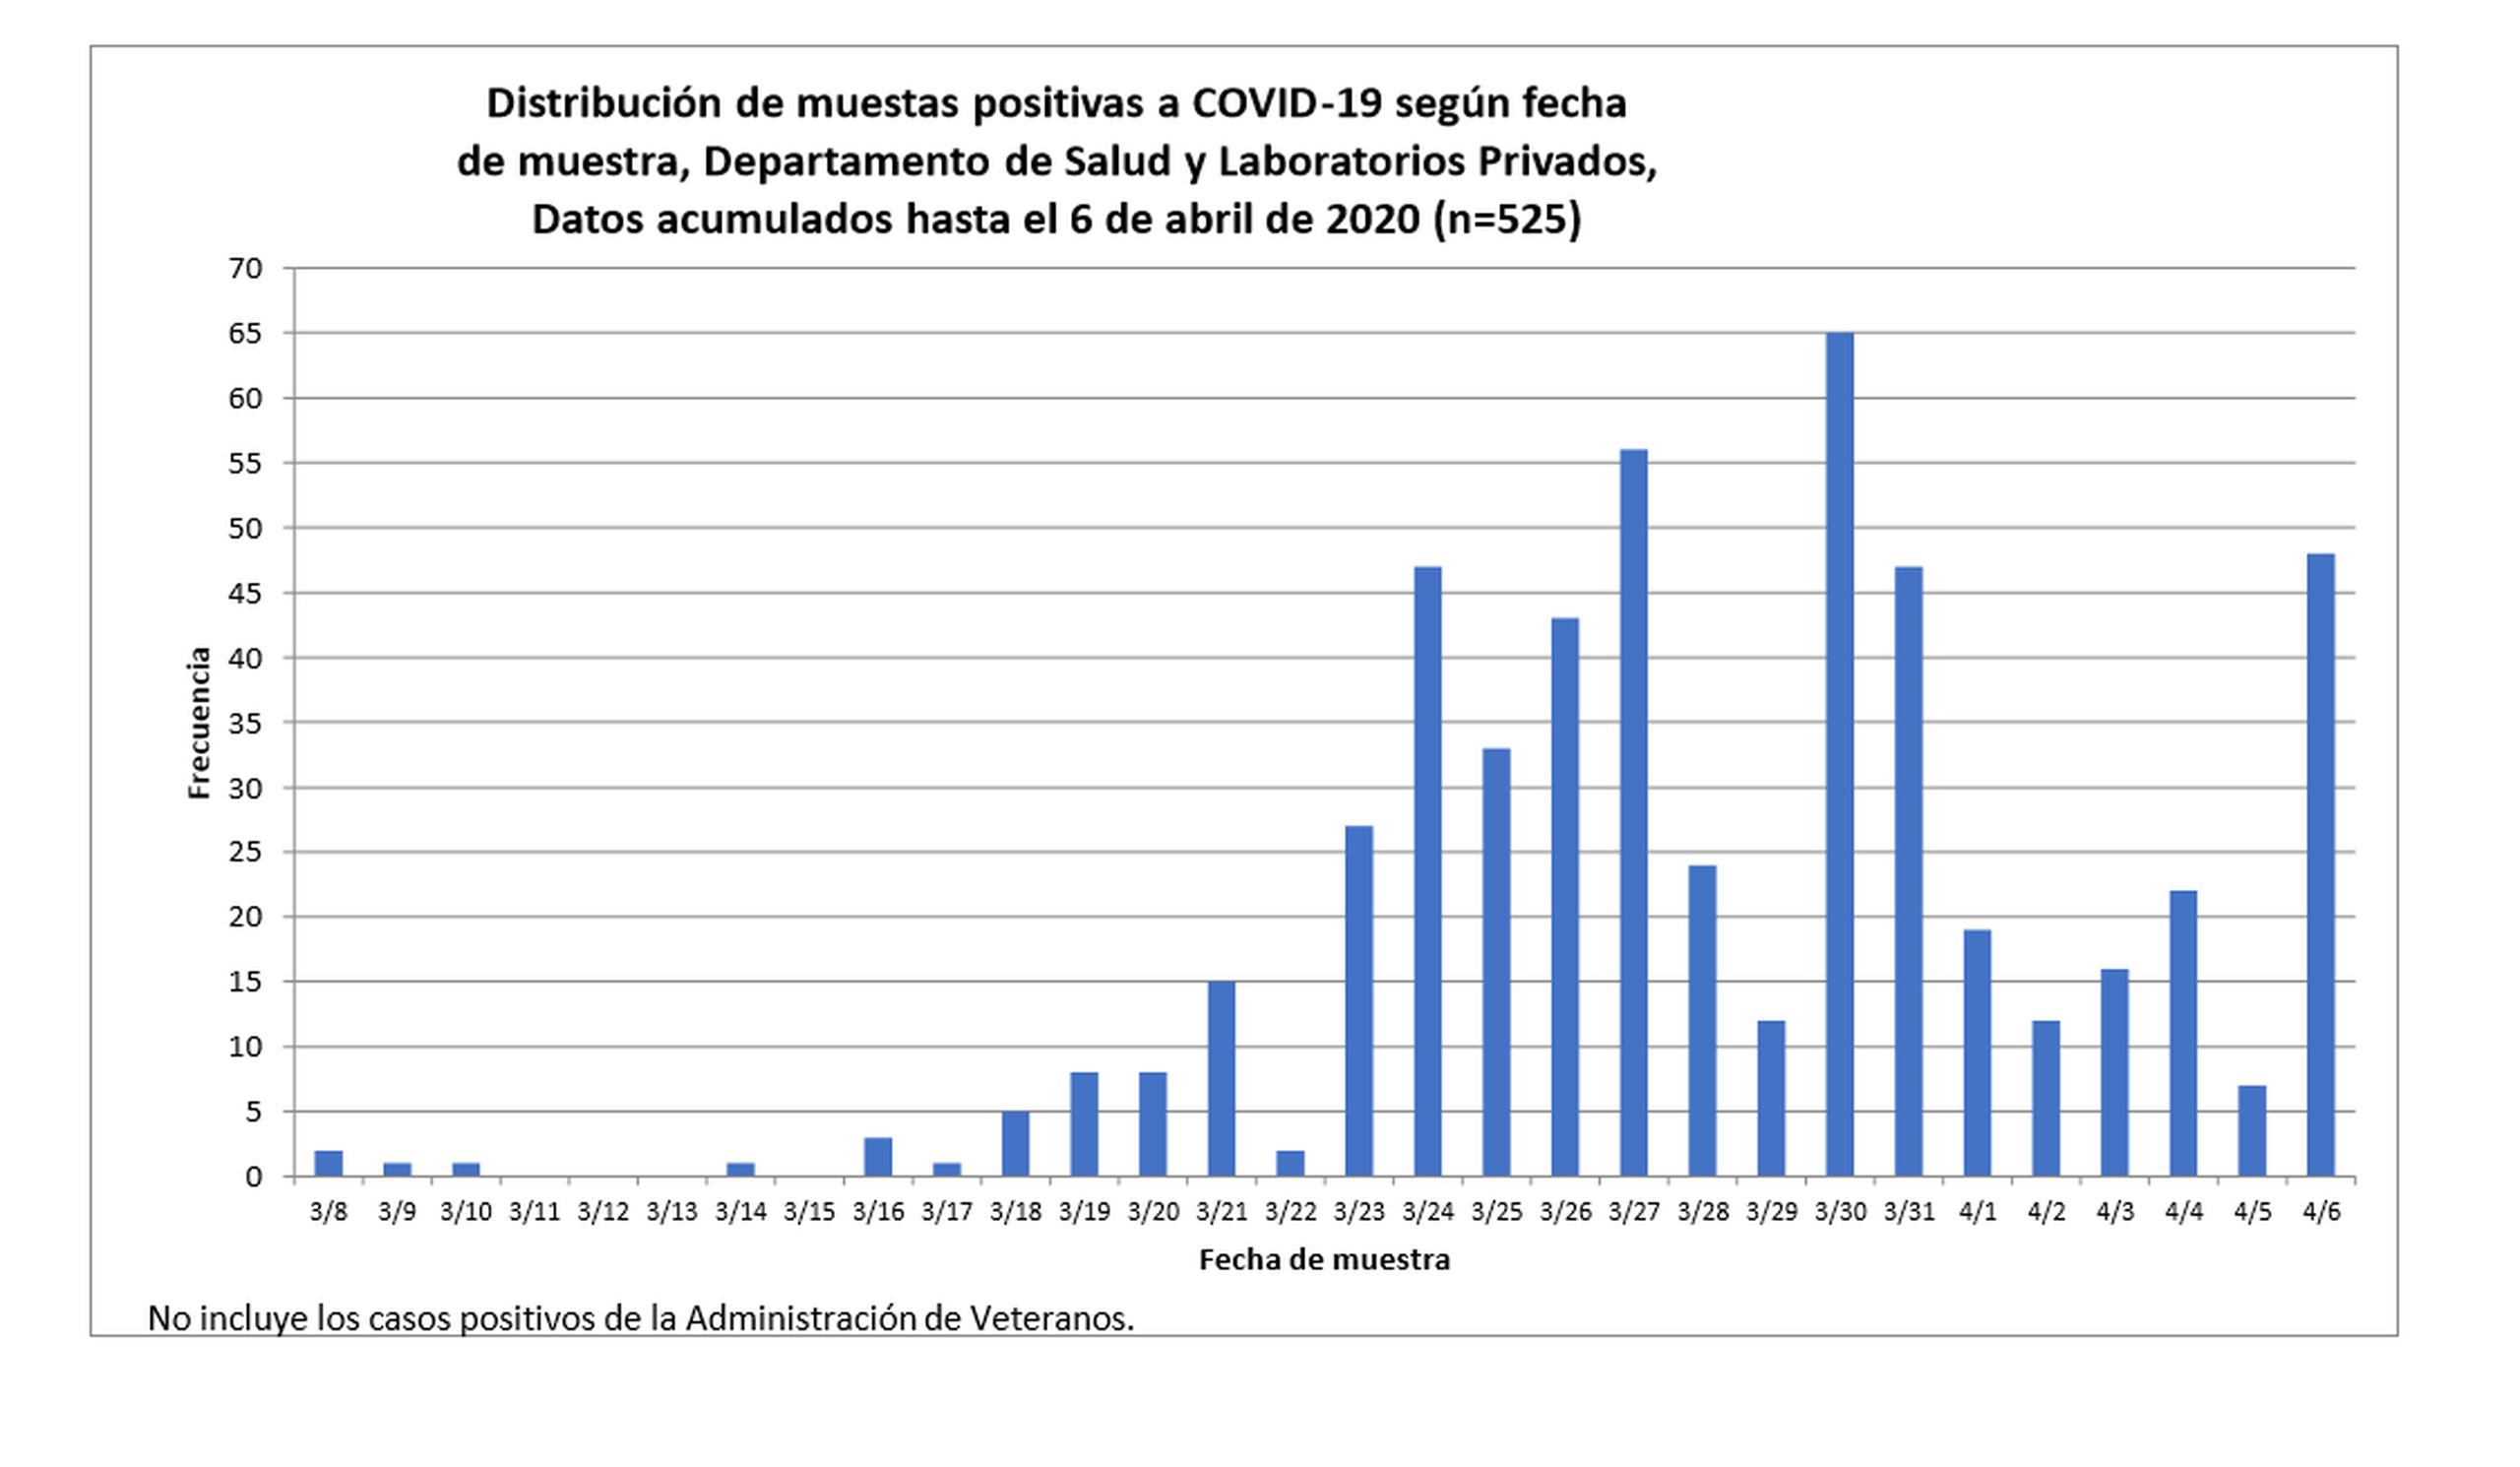 Gráfica sobre la distribución de muestras positivas de coronavirus hasta el 6 de abril de 2020.